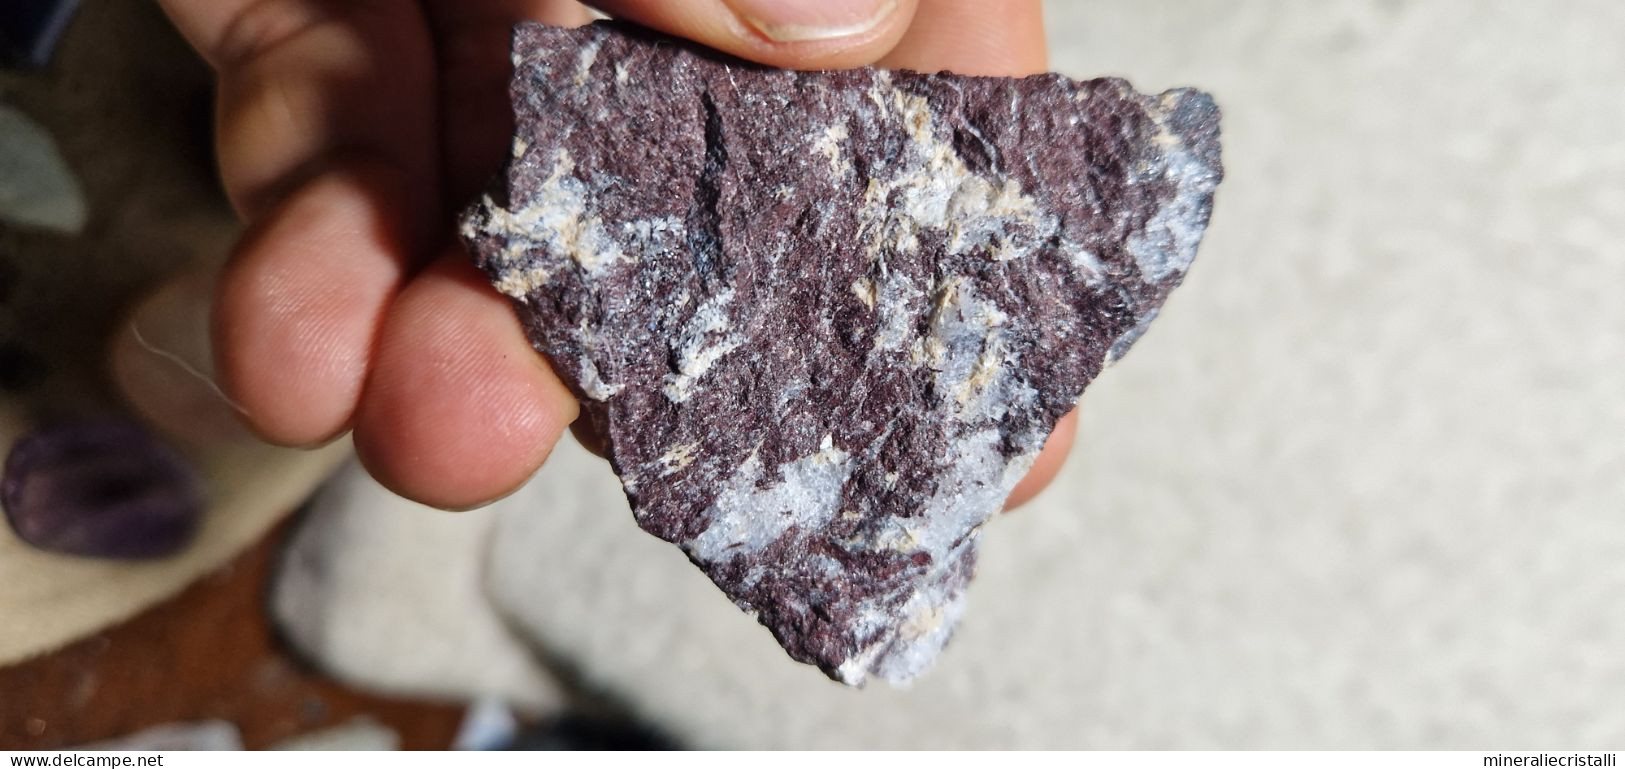 Piemontite Tremolite 42,73 Gr San Marcel Valle D'Aosta Italia - Mineralien